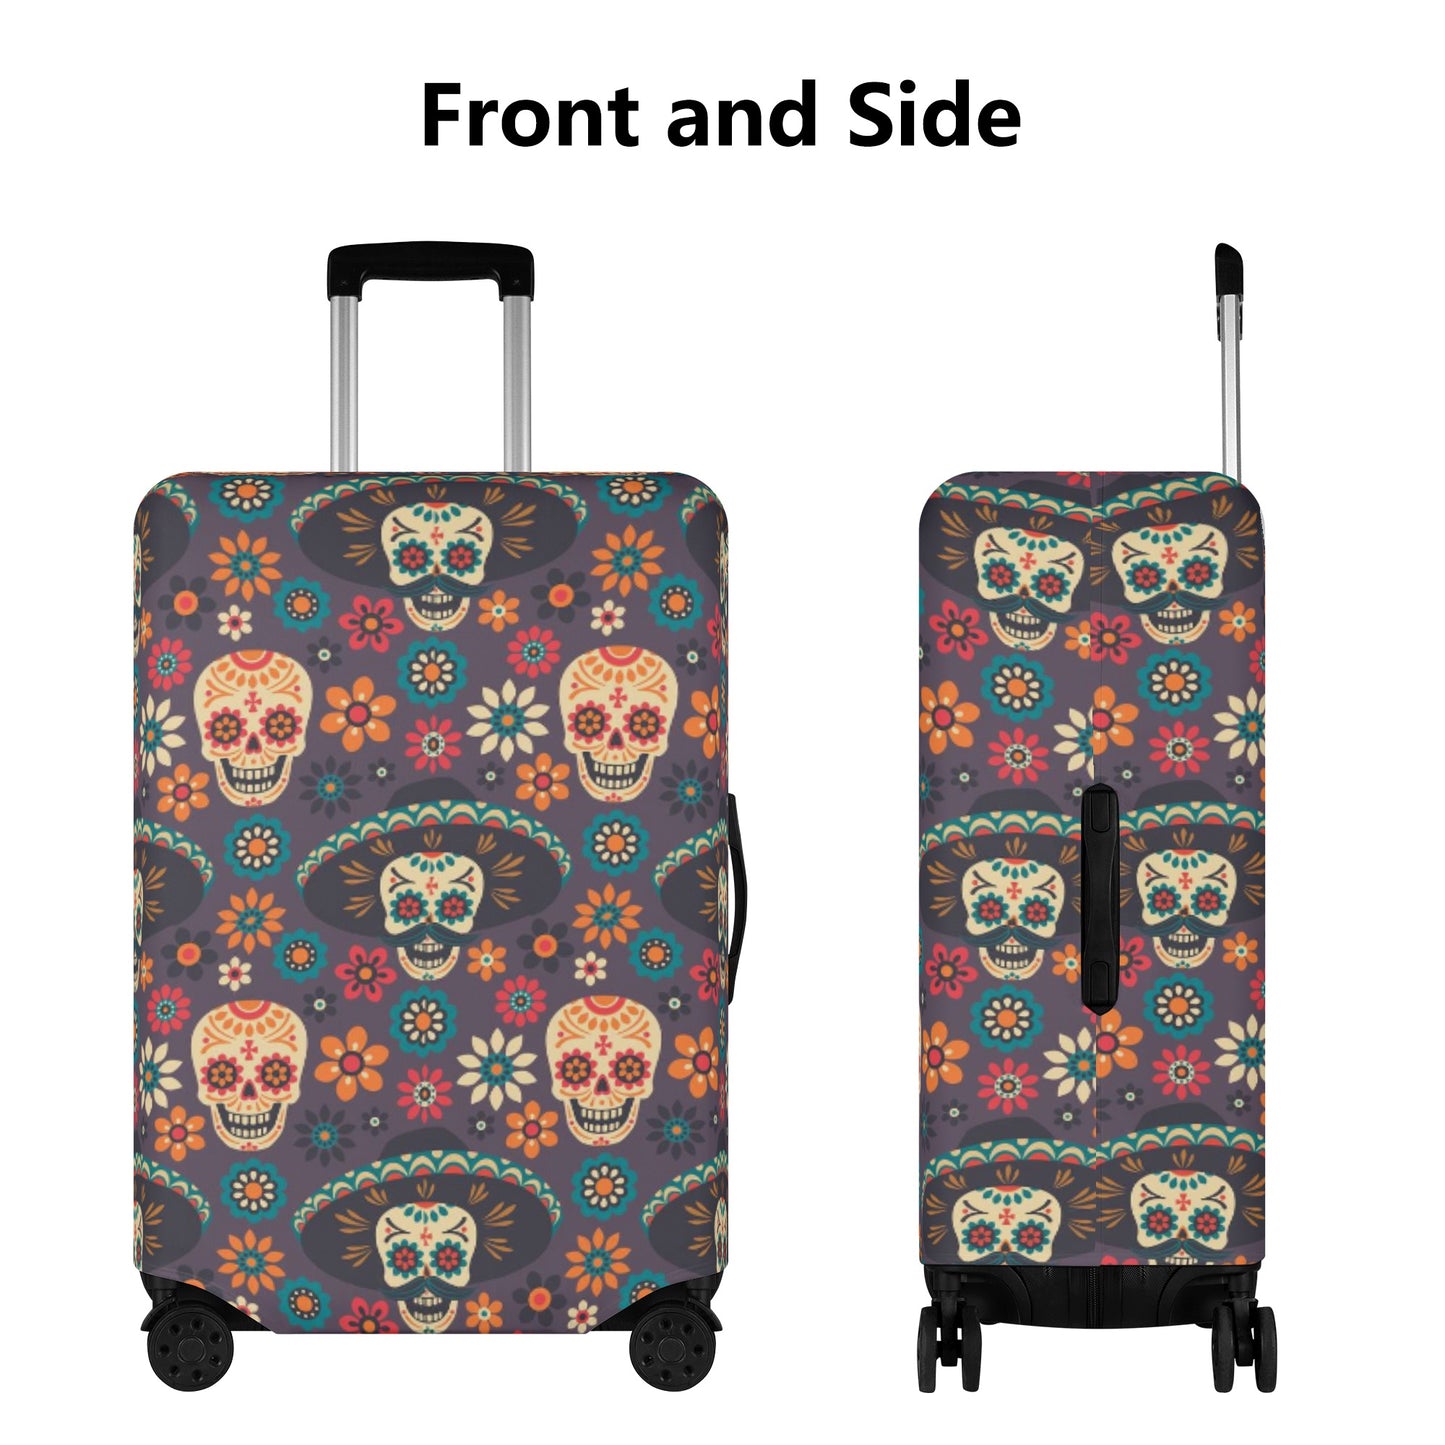 Candy skull luggage tag, dia de los muertos skull luggage cover, floral sugar skull suitcase tag, dia de los muertos skull travel bag cover,